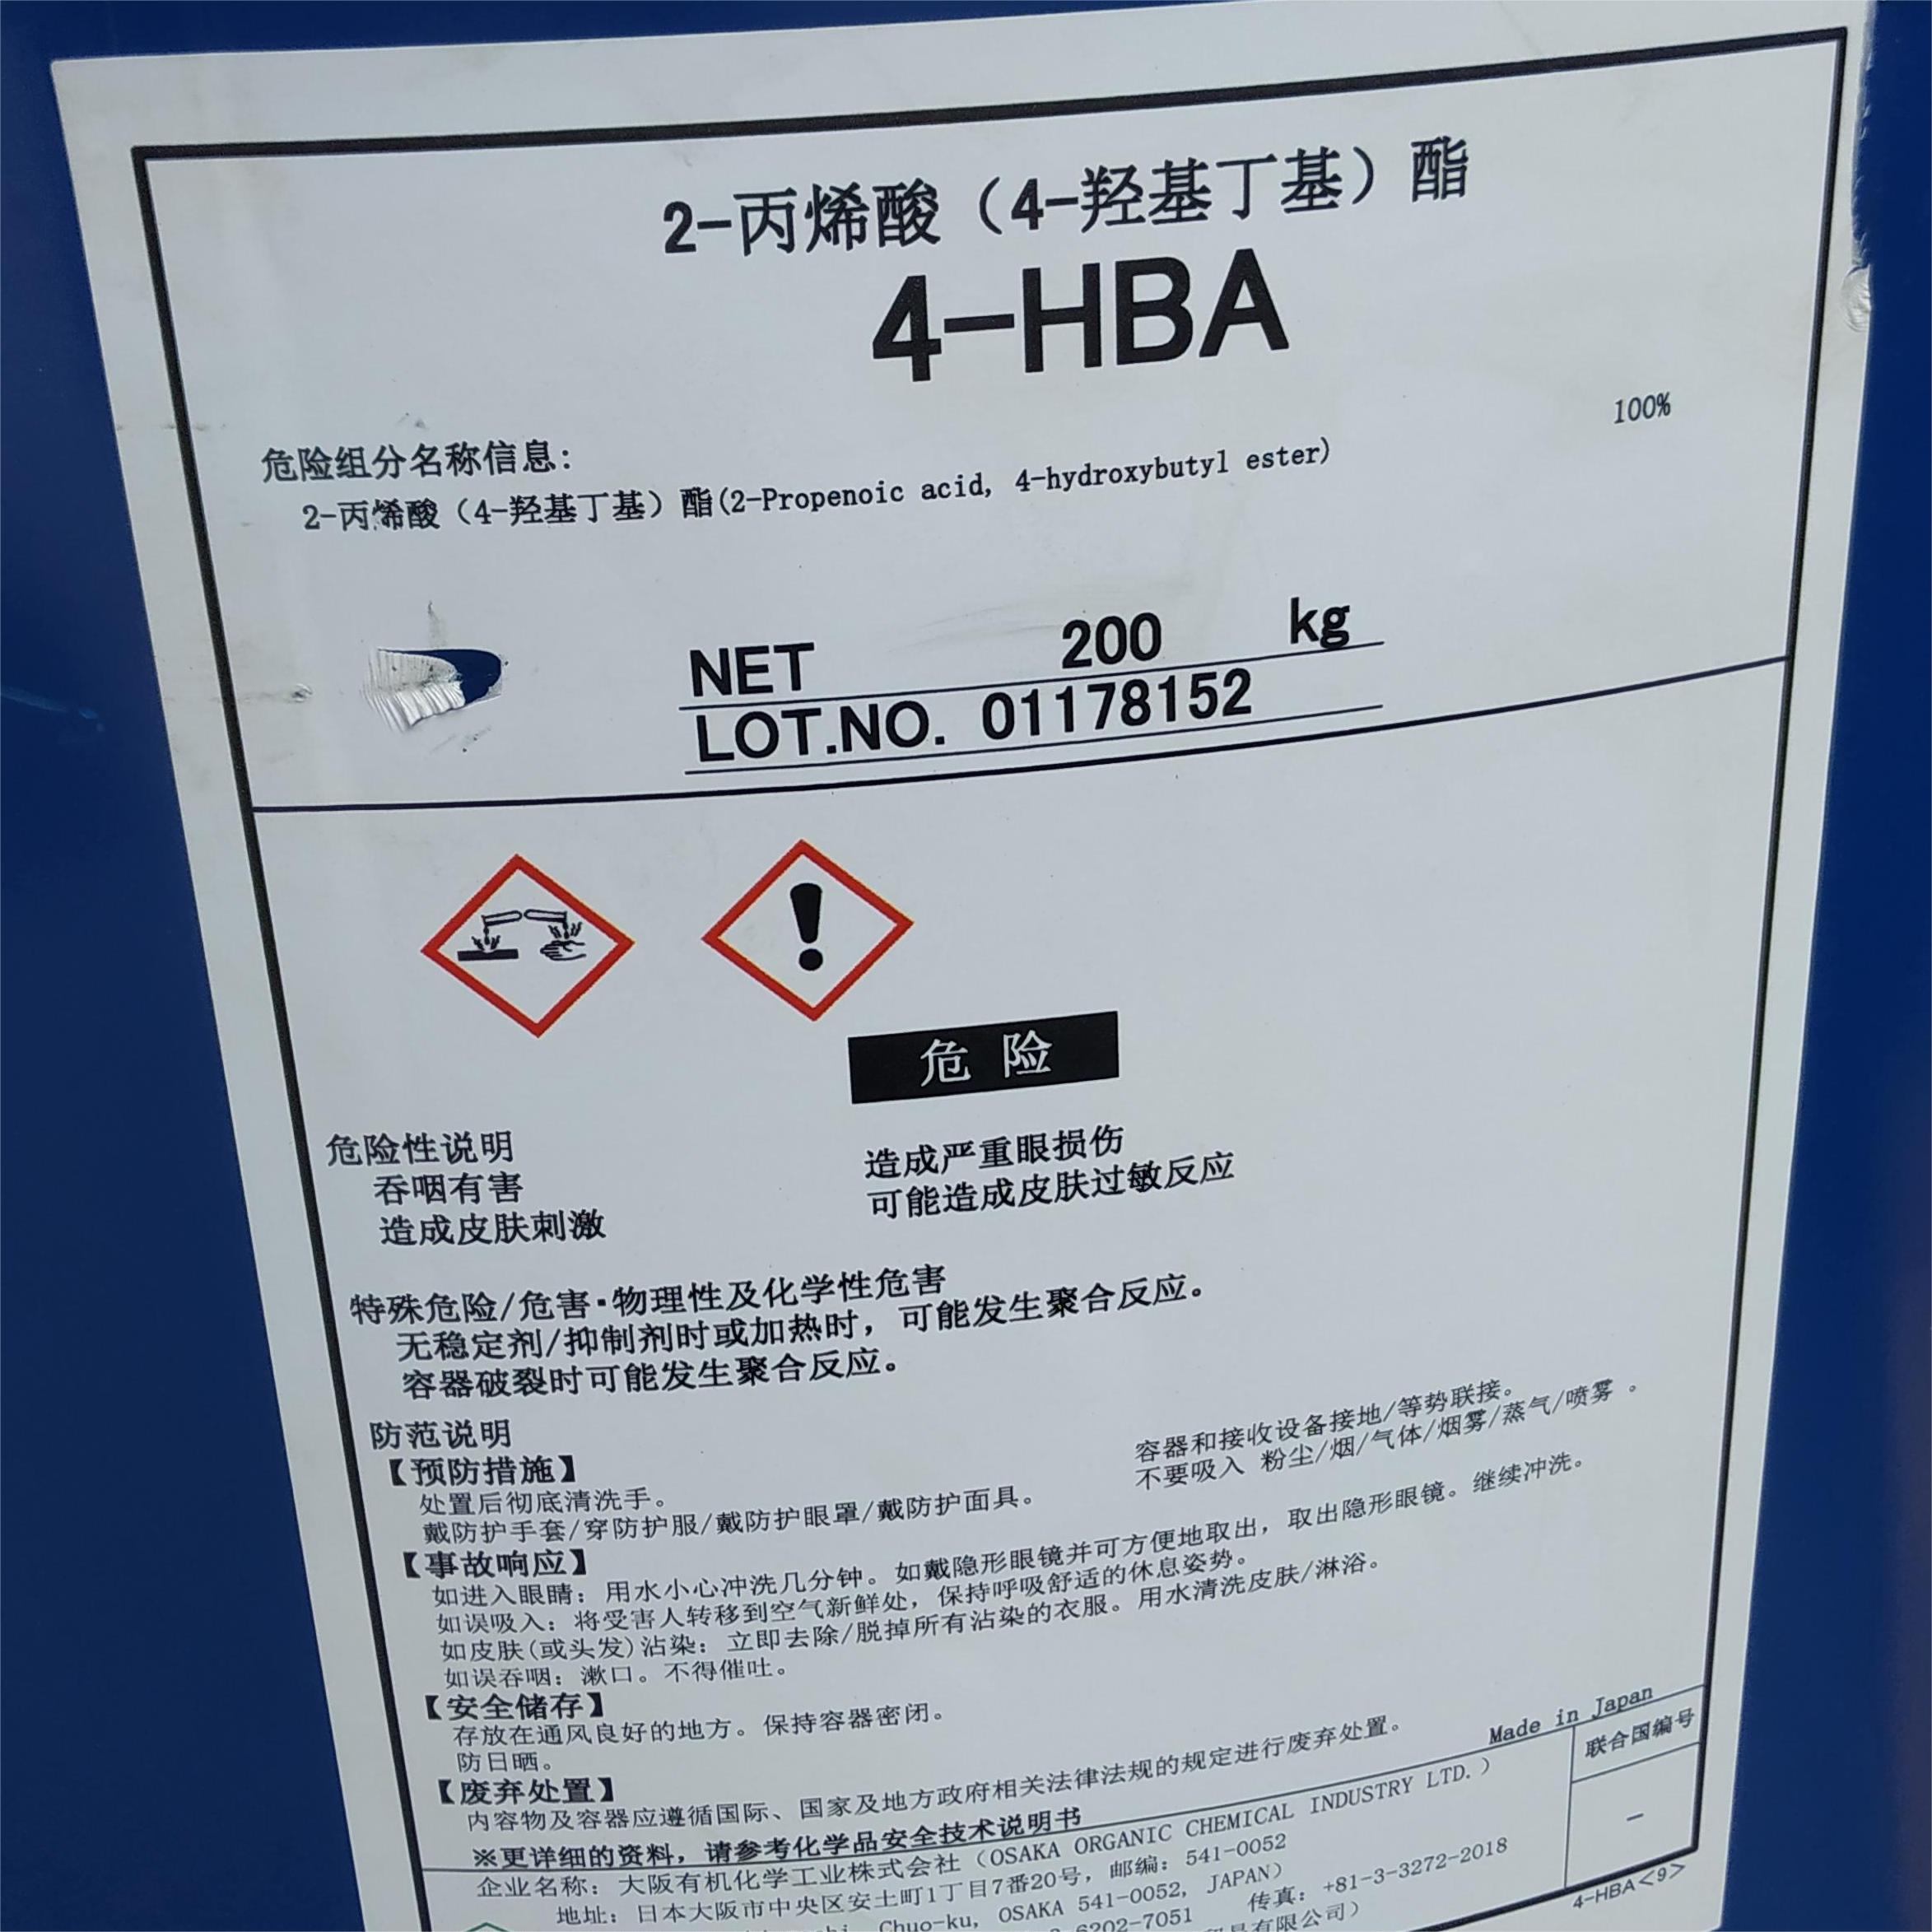 大阪有机化学 4-HBA